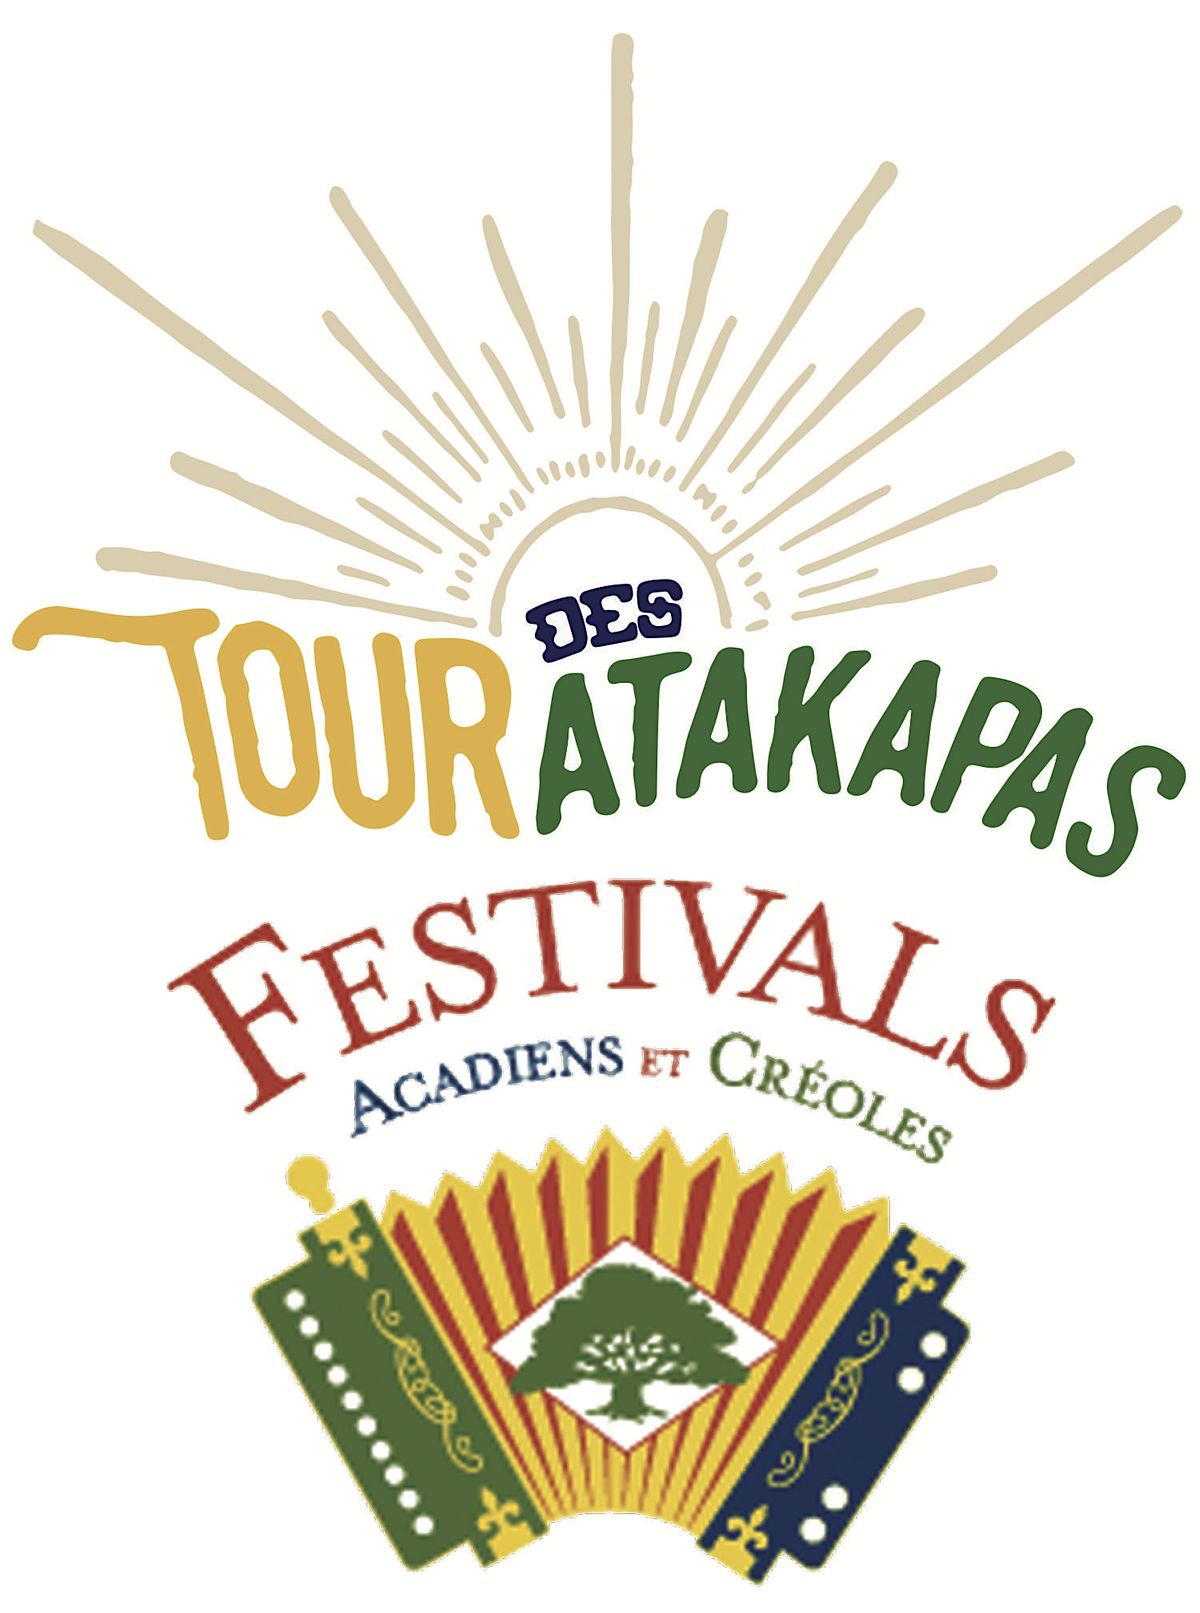 Tour des Atakapas the official run and du of Festivals Acadiens et Cr\u00e9oles